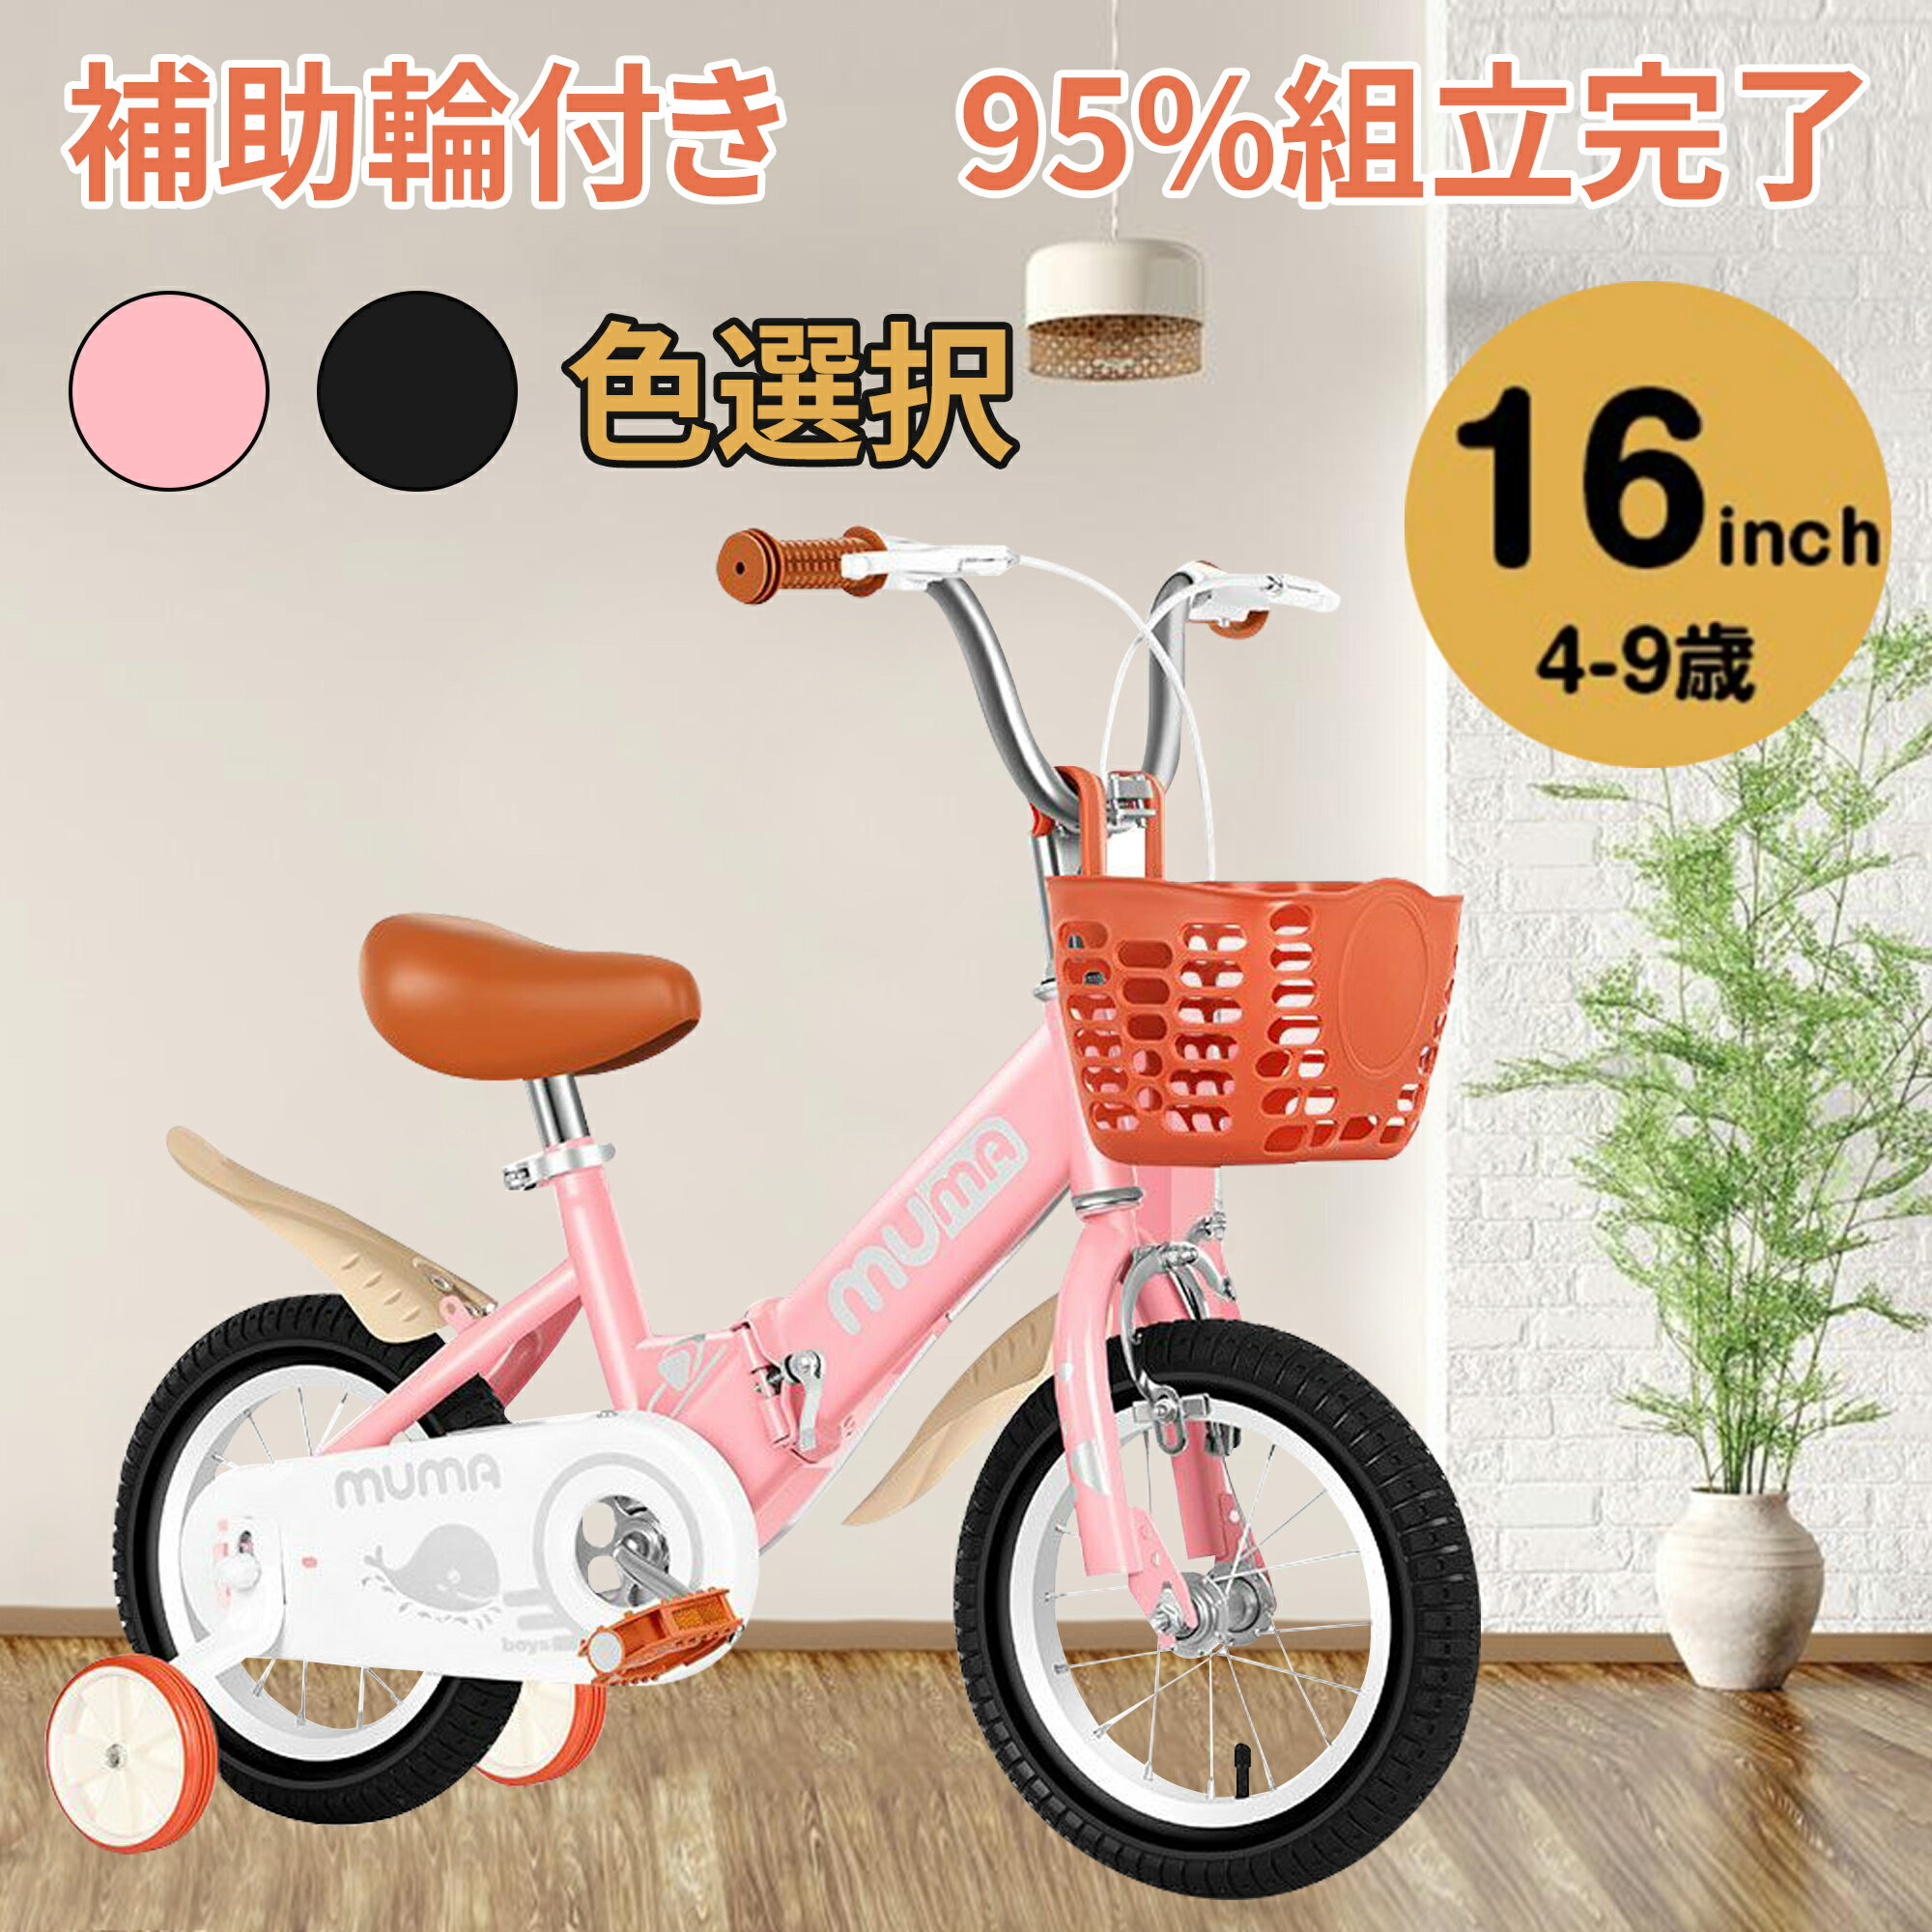 誕生日プレゼント 3歳の女の子に かわいいデザインで安全に乗れる自転車のおすすめプレゼントランキング Ocruyo オクルヨ